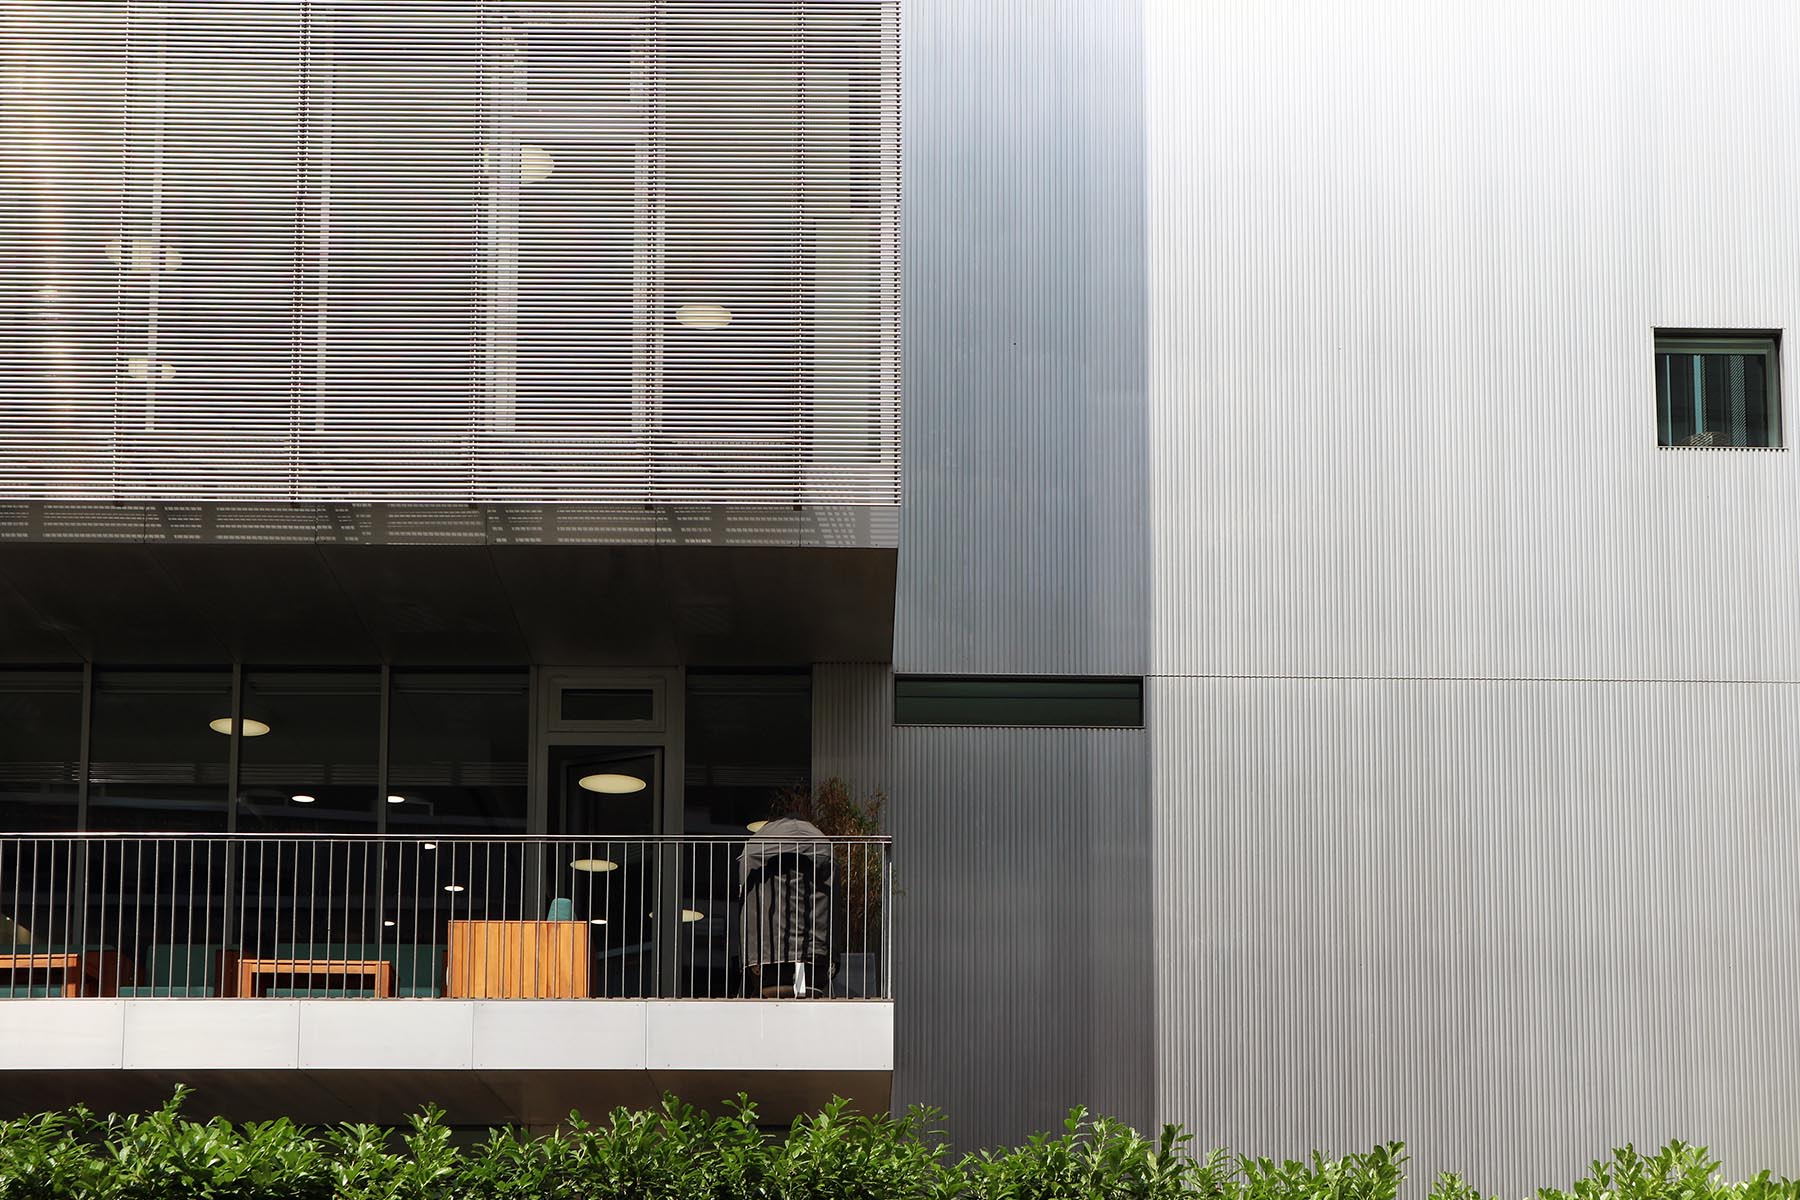 Maki-Solitär. Der achtgeschossige Kubus des japanischen Pritzker-Preisträgers hat eine feingliedrige Fassade aus Aluminium und Glas. 